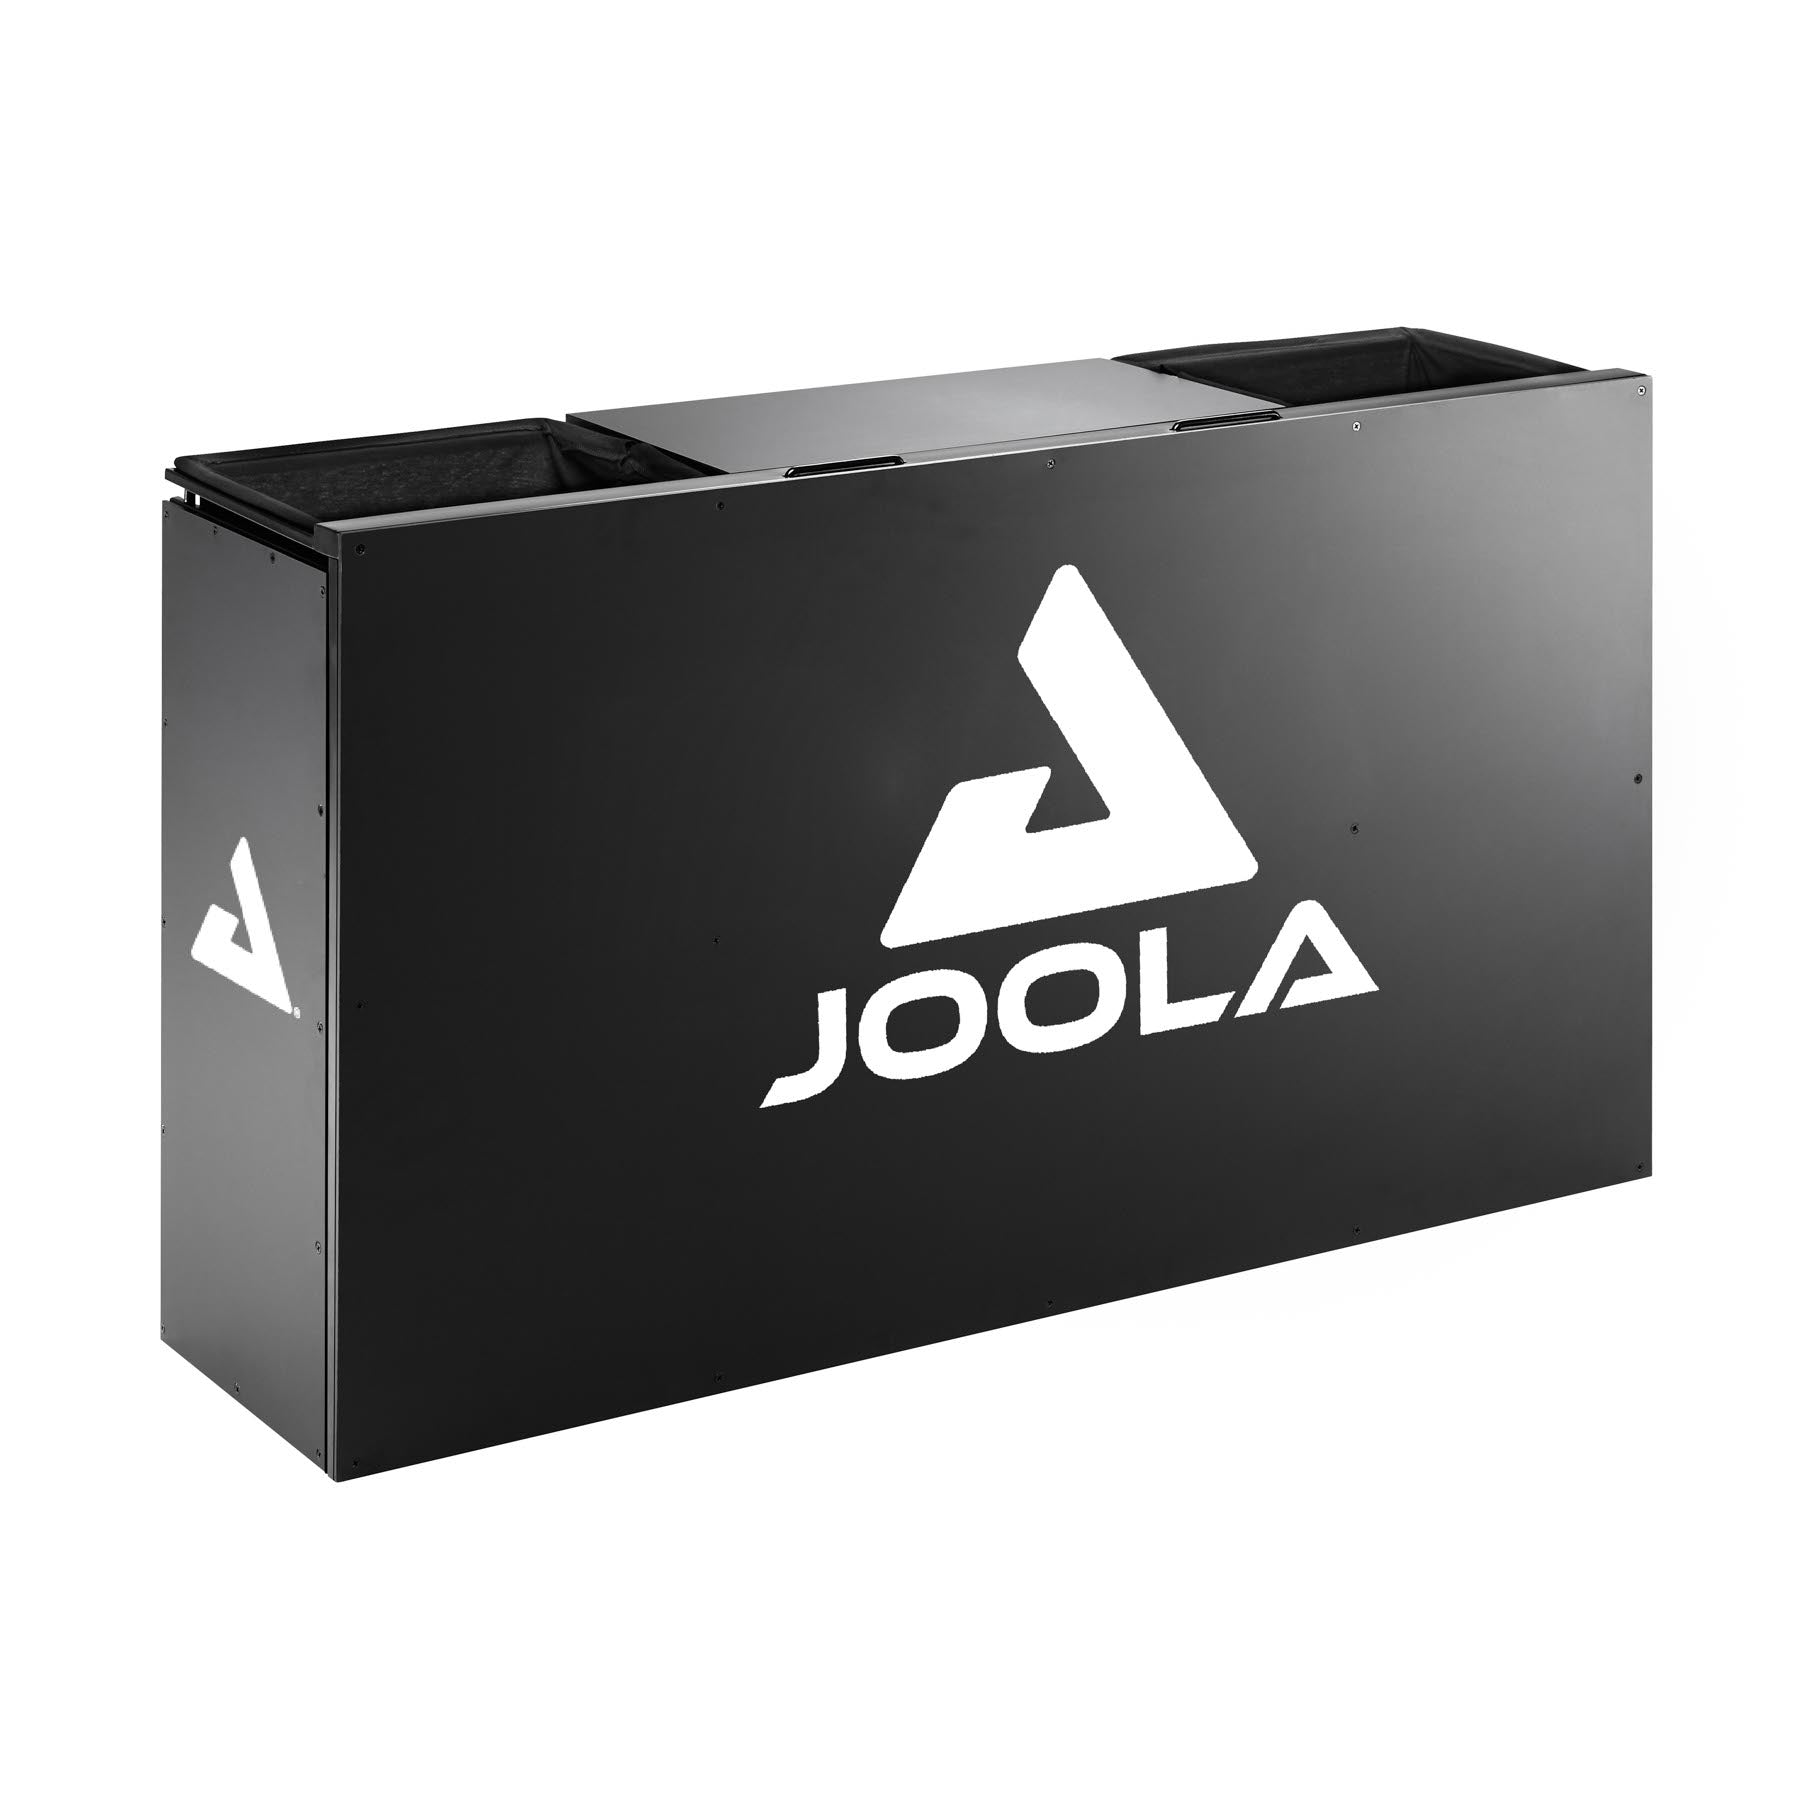 TT Store Tischtennis Joola - JOOLA Schiedsrichtertisch mit Handtuchkörben